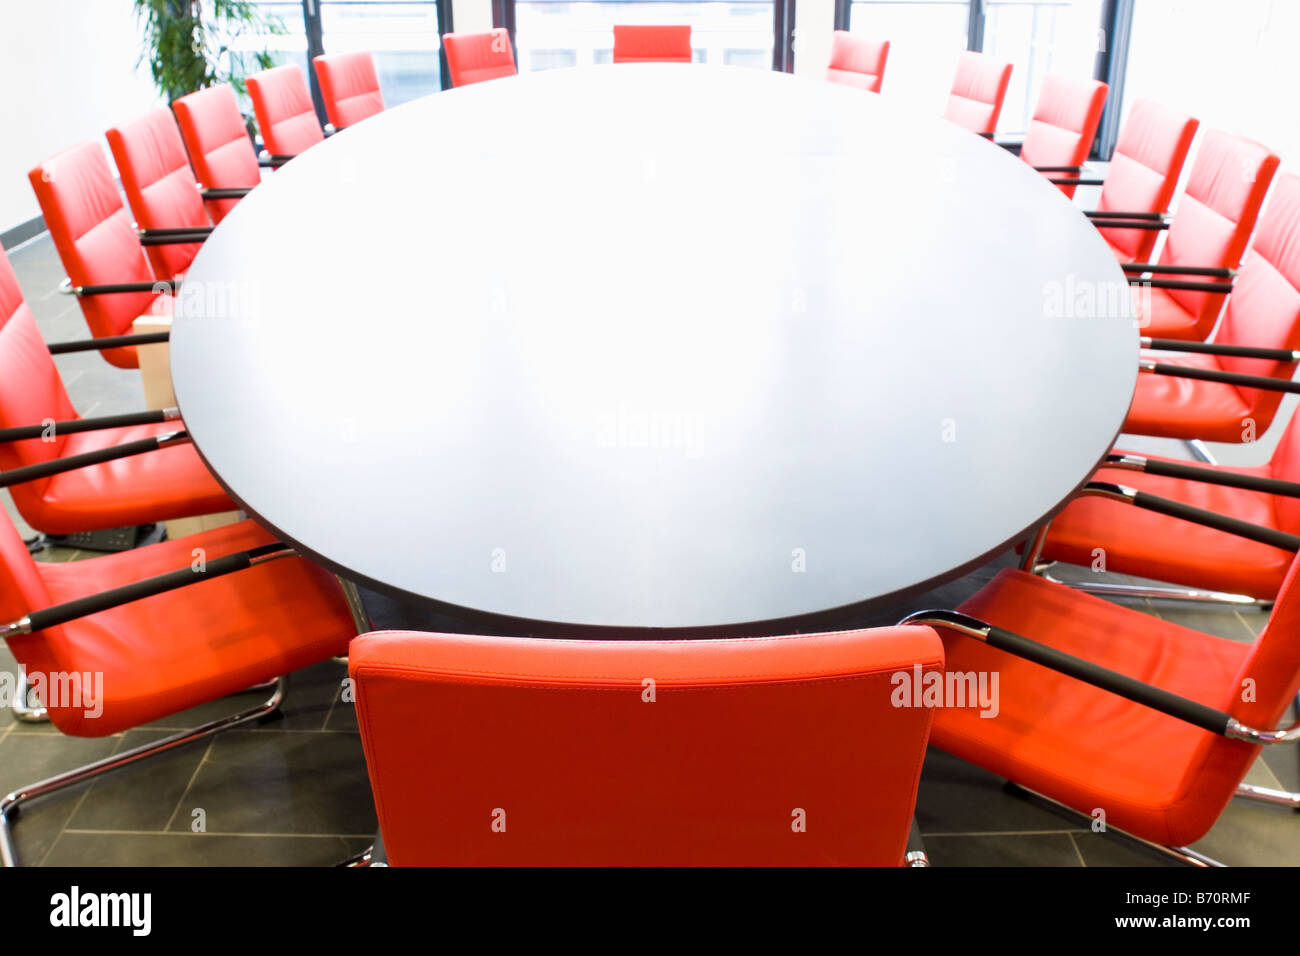 Sala riunioni con sedie rosse e tavolo ovale Focus sulla sedia in primo piano Foto Stock